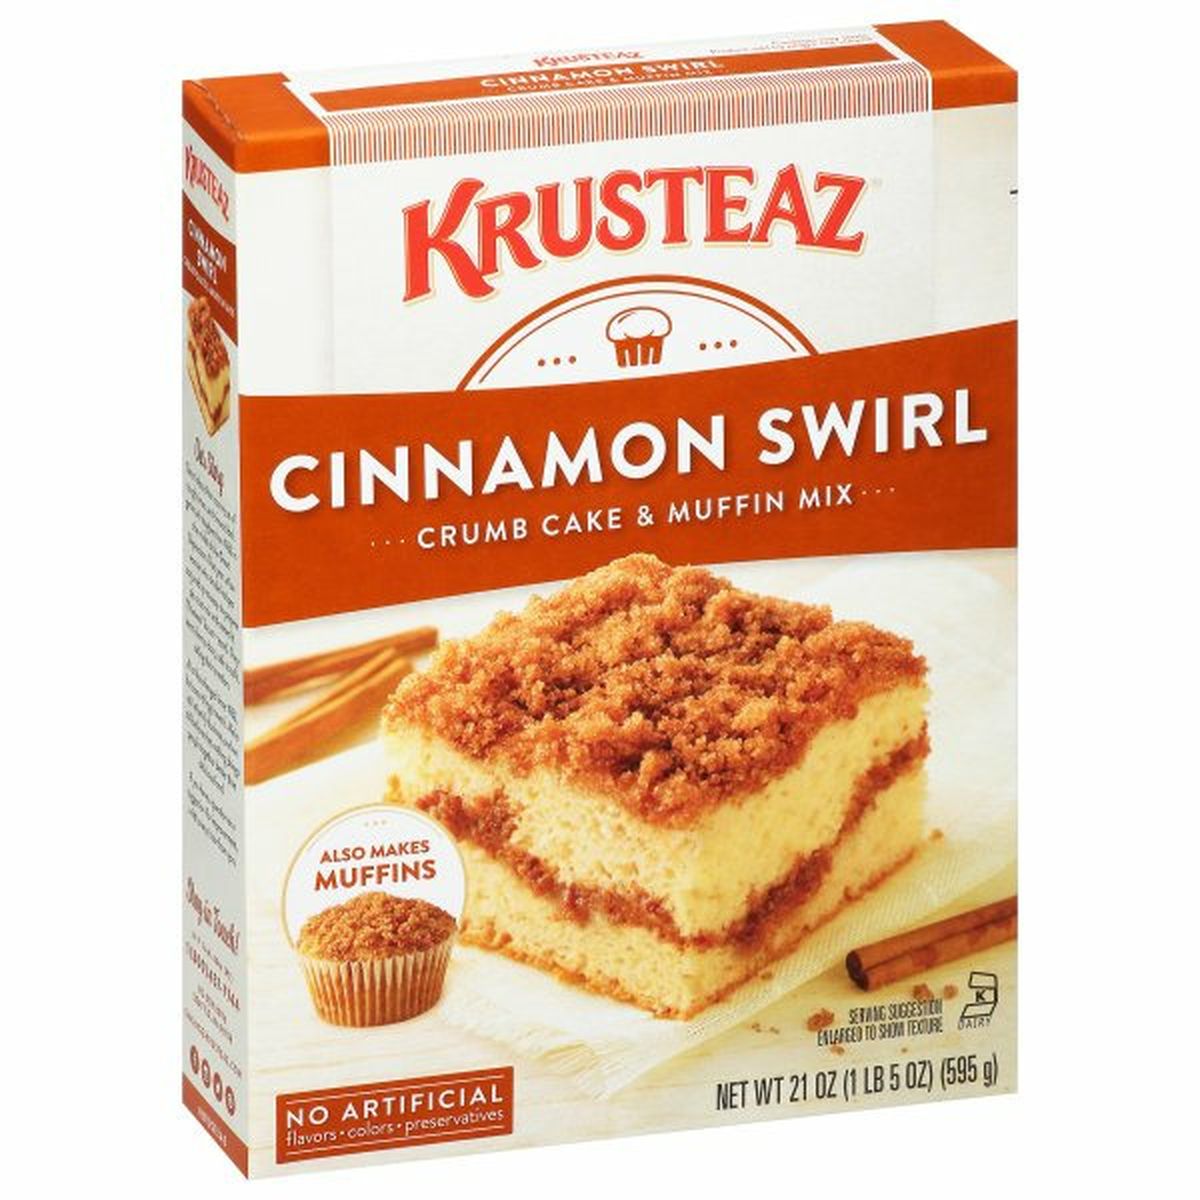 Calories in Krusteaz Crumb Cake & Muffin Mix, Cinnamon Swirl